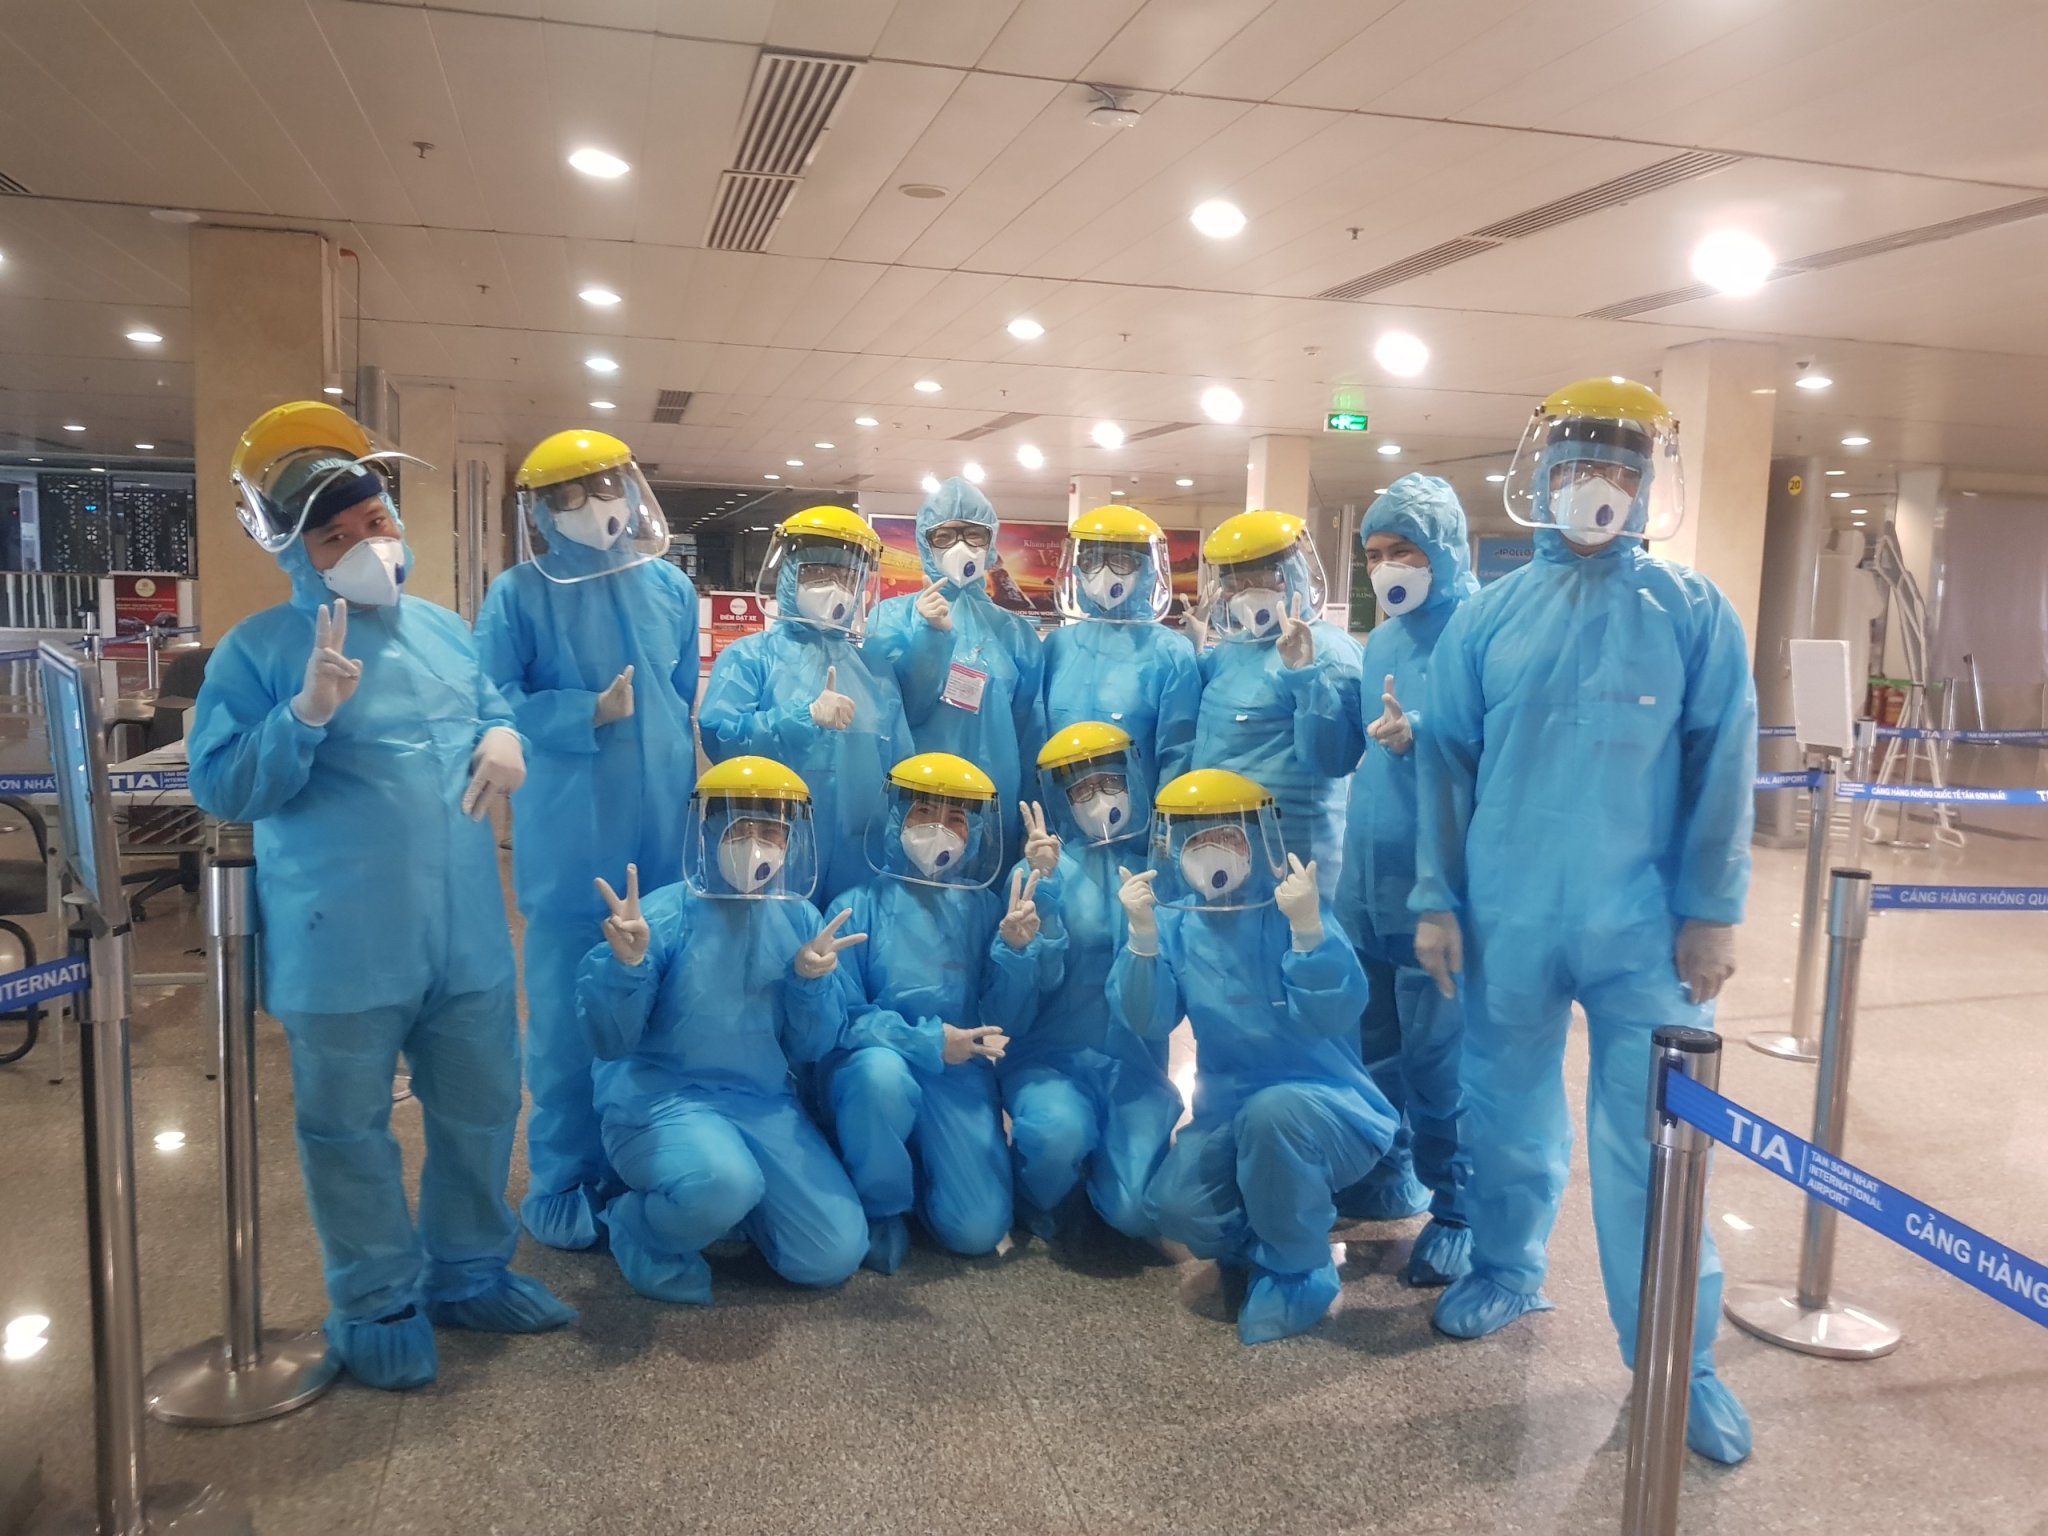 Trung tâm Y tế Q.Bình Tân: Thực hiện kiểm dịch y tế tại sân bay Tân Sơn Nhất